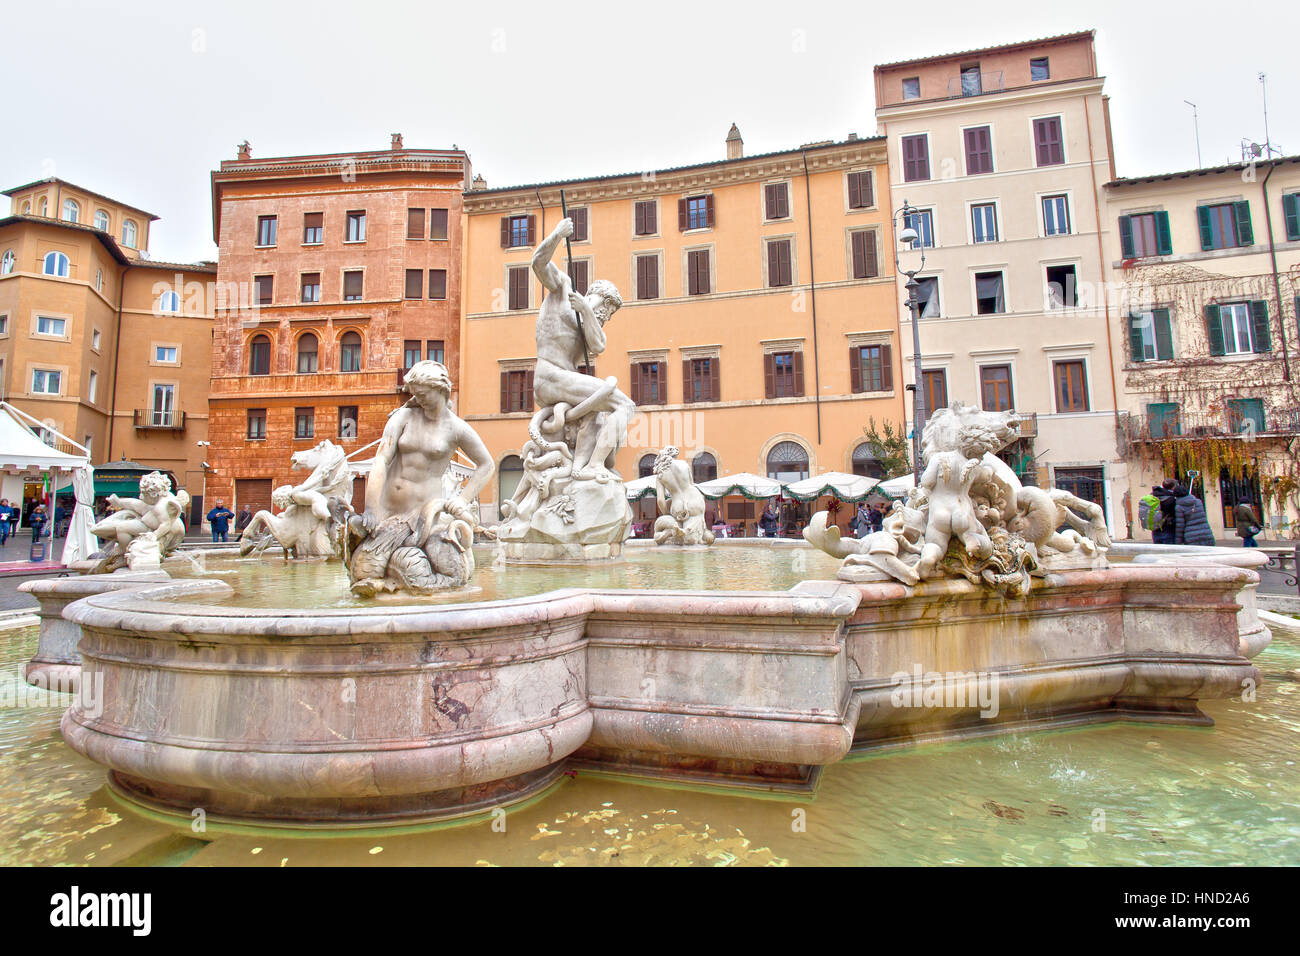 Rom, Italien - 8. Januar 2017: Blick von Fontana del Nettuno (Neptunbrunnen) auf der Piazza Navona, Rom. Nicht identifizierte Touristen besuchen den Ort Stockfoto